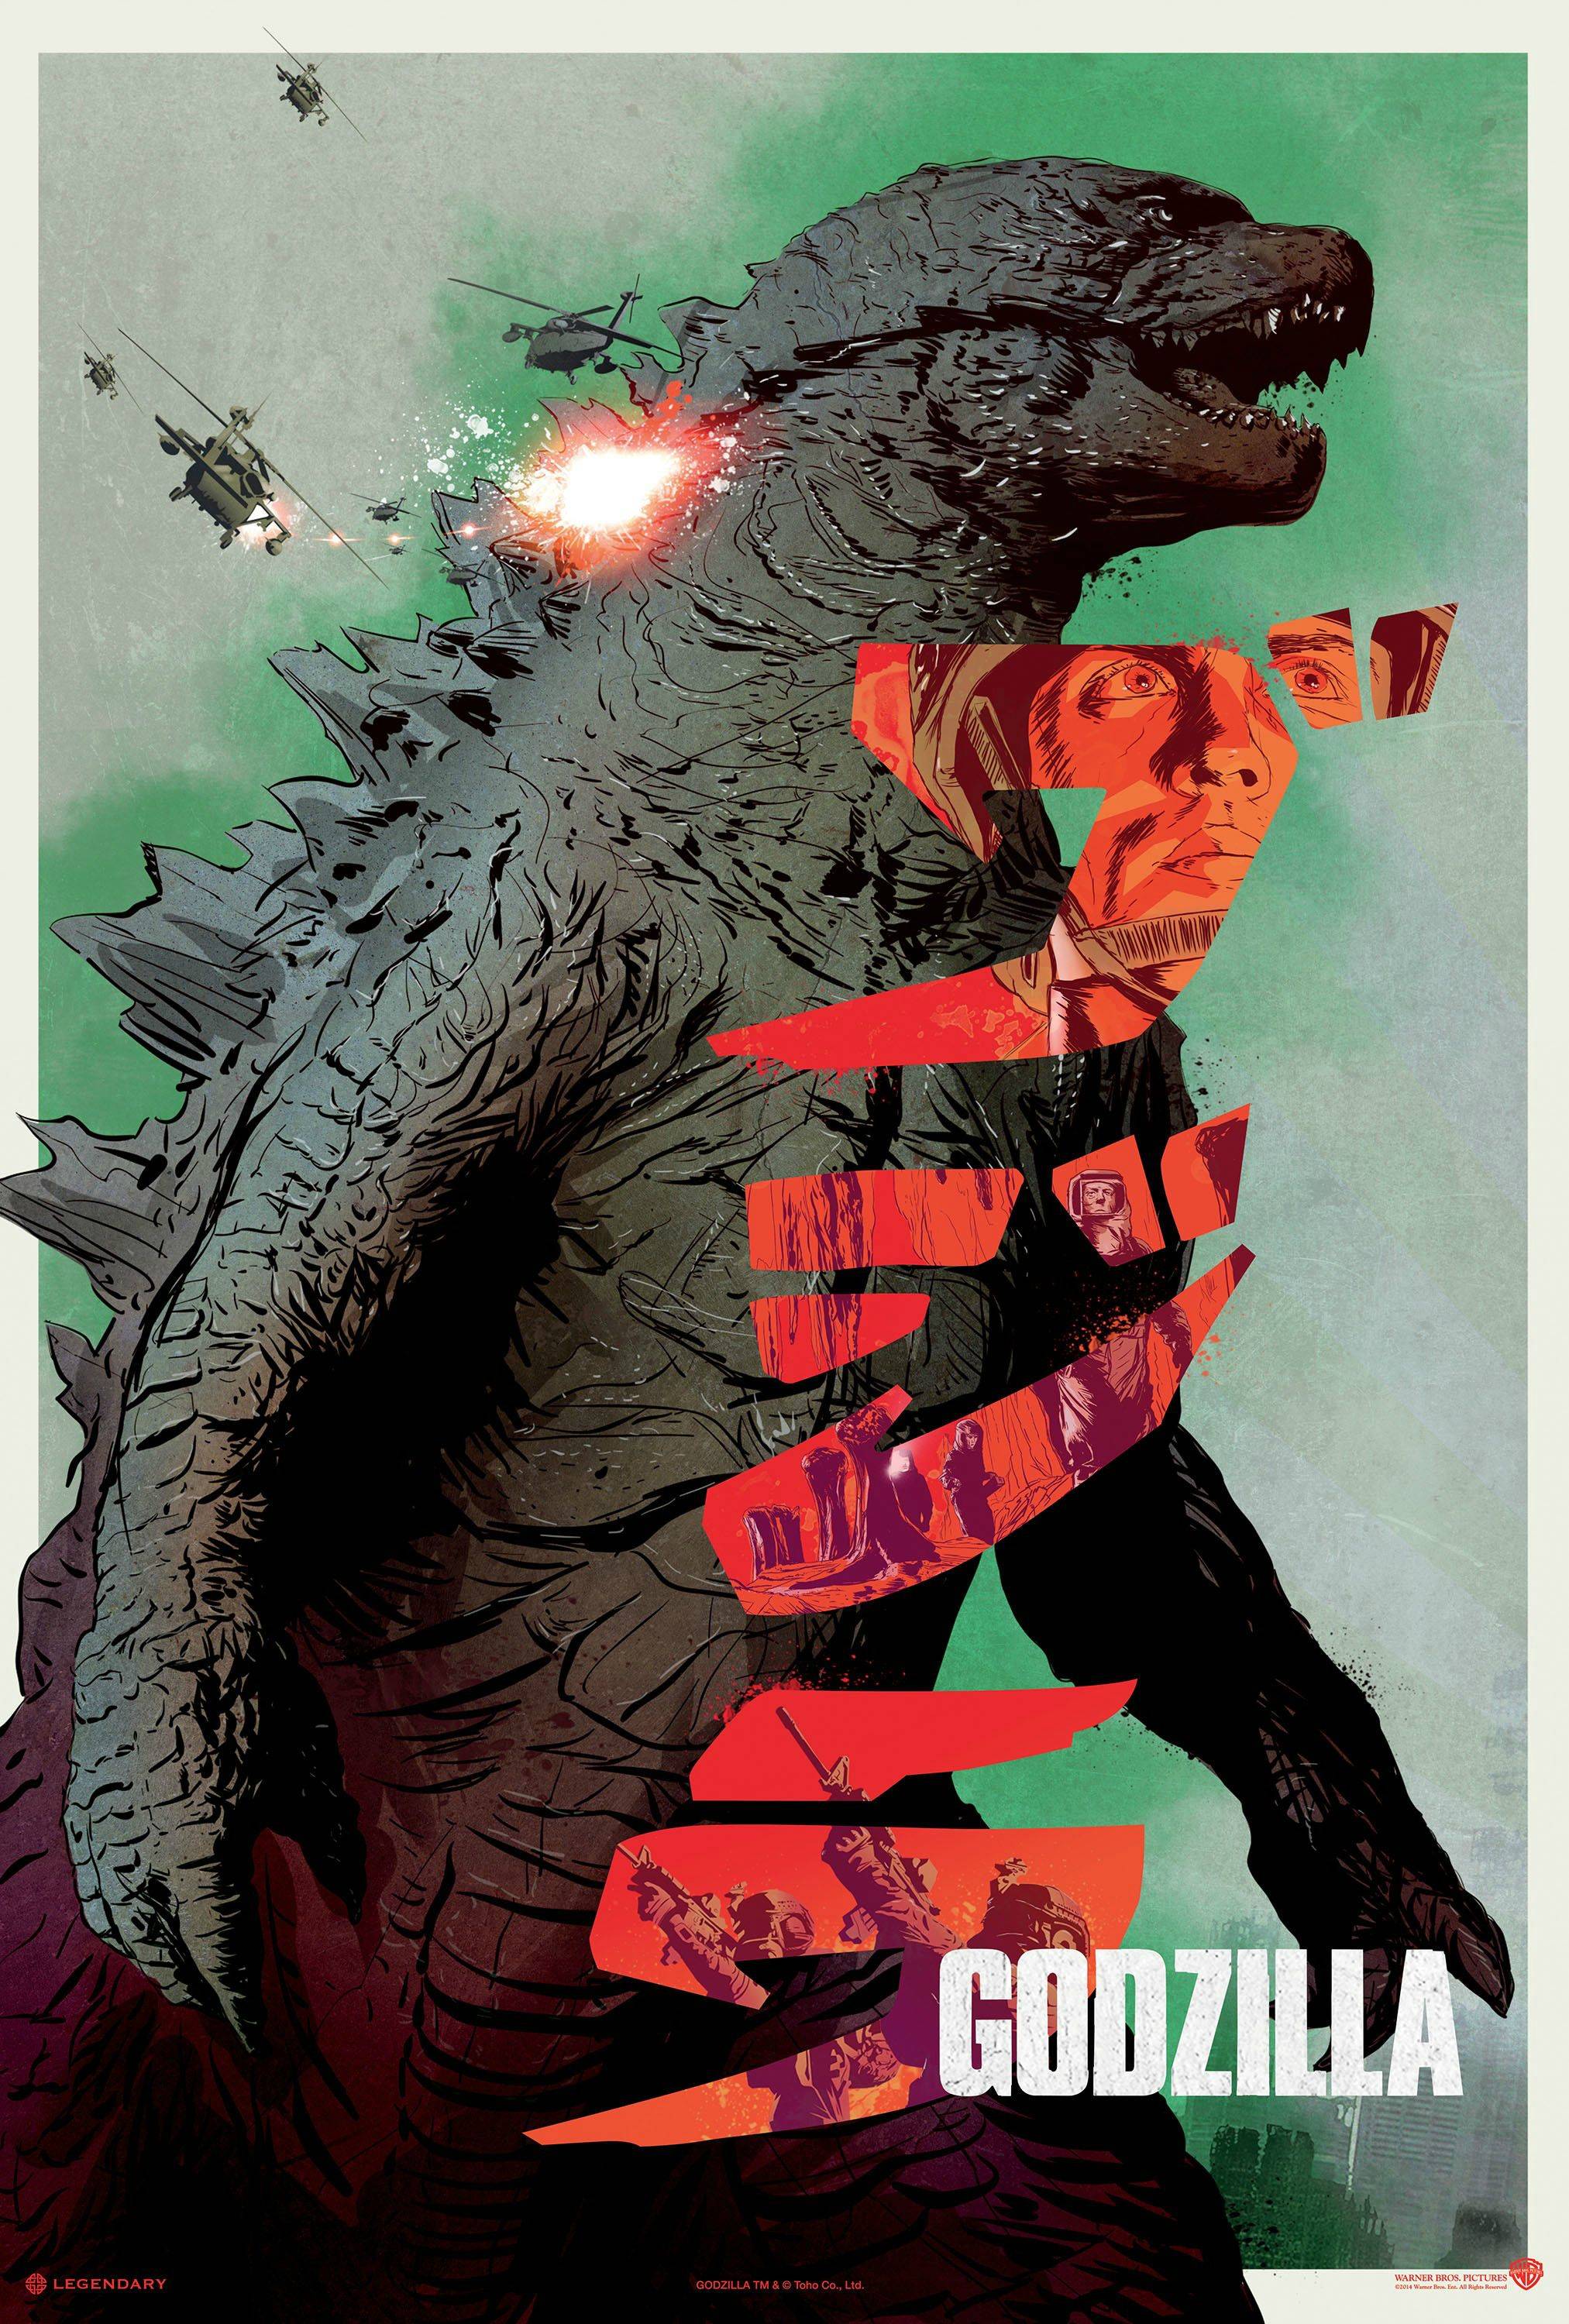 Whoa [Godzilla 2014] : HighQualityGifs